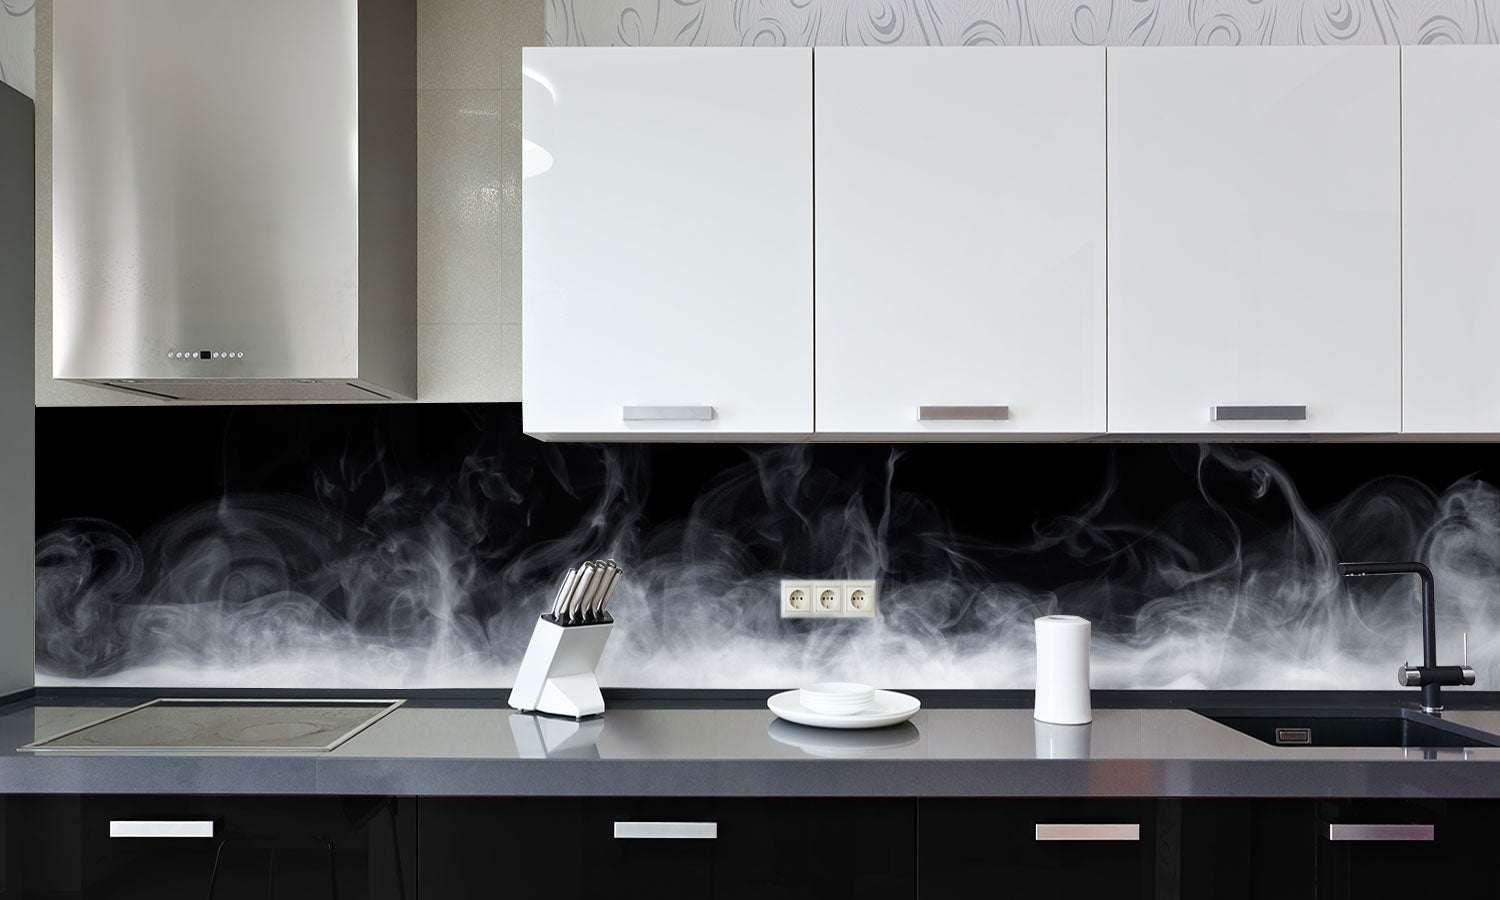 Kuhinjski paneli   Abstract Smoke - Stekleni / PVC plošče / Pleksi steklo - s tiskom za kuhinjo, Stenske obloge PKU049 - Life-decor.si